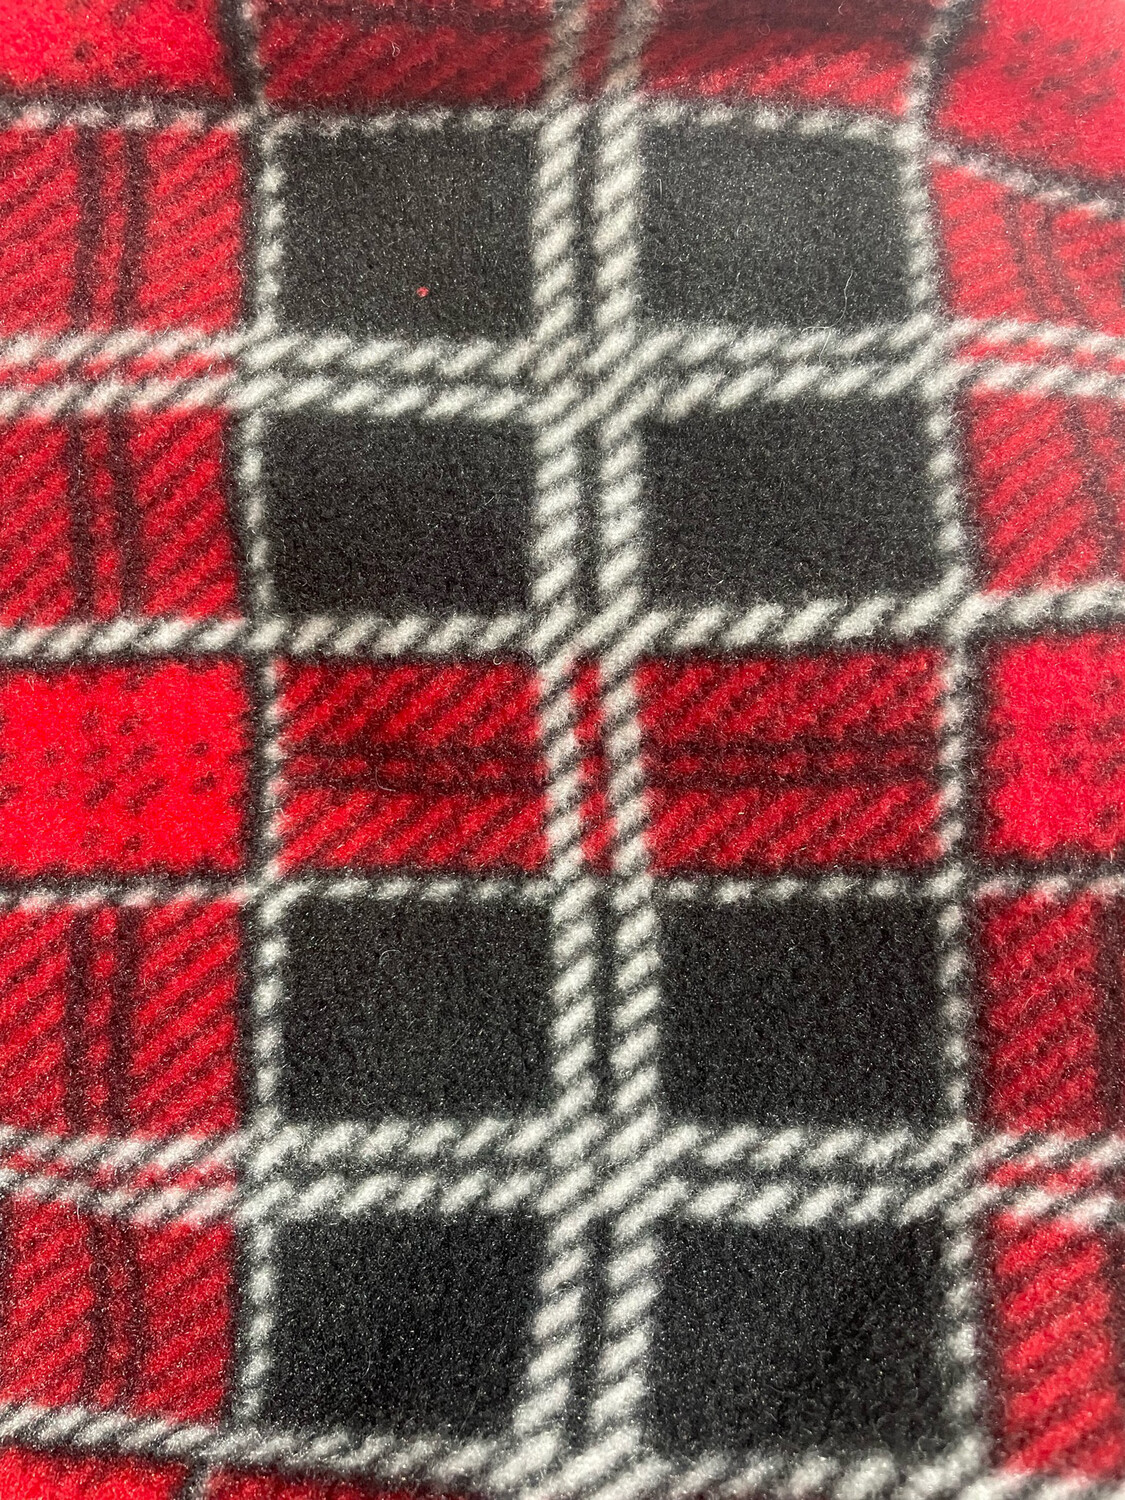 Polar Fleece Saddle Cover - Black/Red Check